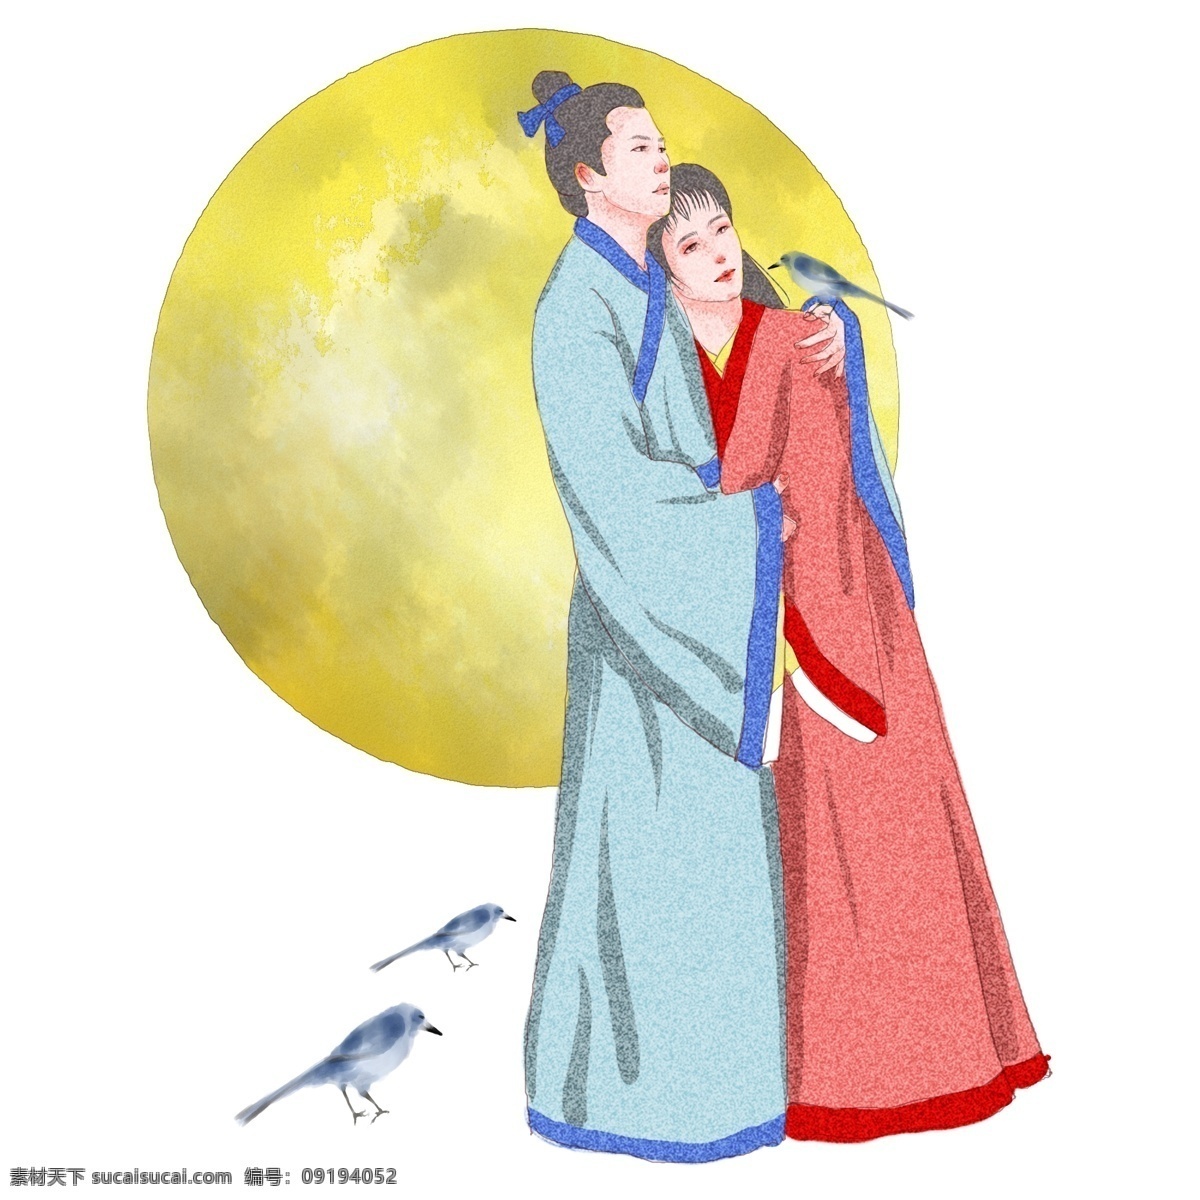 牛郎织女 七夕 节日 原创 商用 元素 爱情 浪漫 可爱 神话 牛郎 织女 相会 手绘 板绘